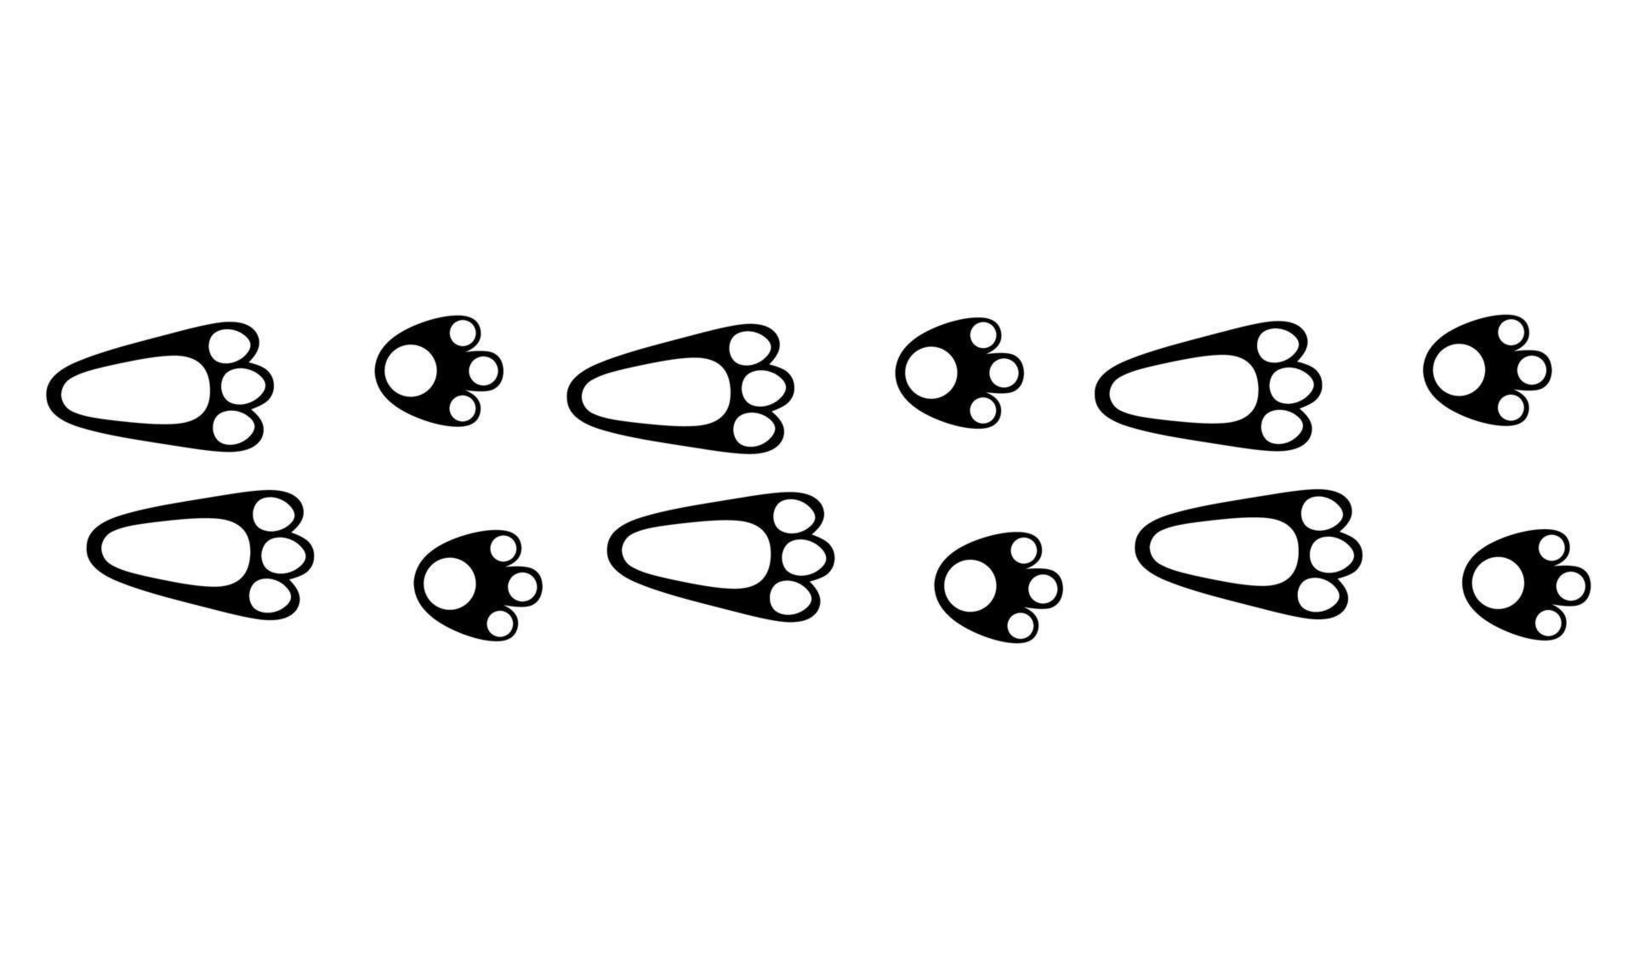 silueta vectorial de un rastro de conejo sobre un fondo blanco. huella de conejo saltando en patrón de conejo negro. ideal para logotipos de rastros de animales vector